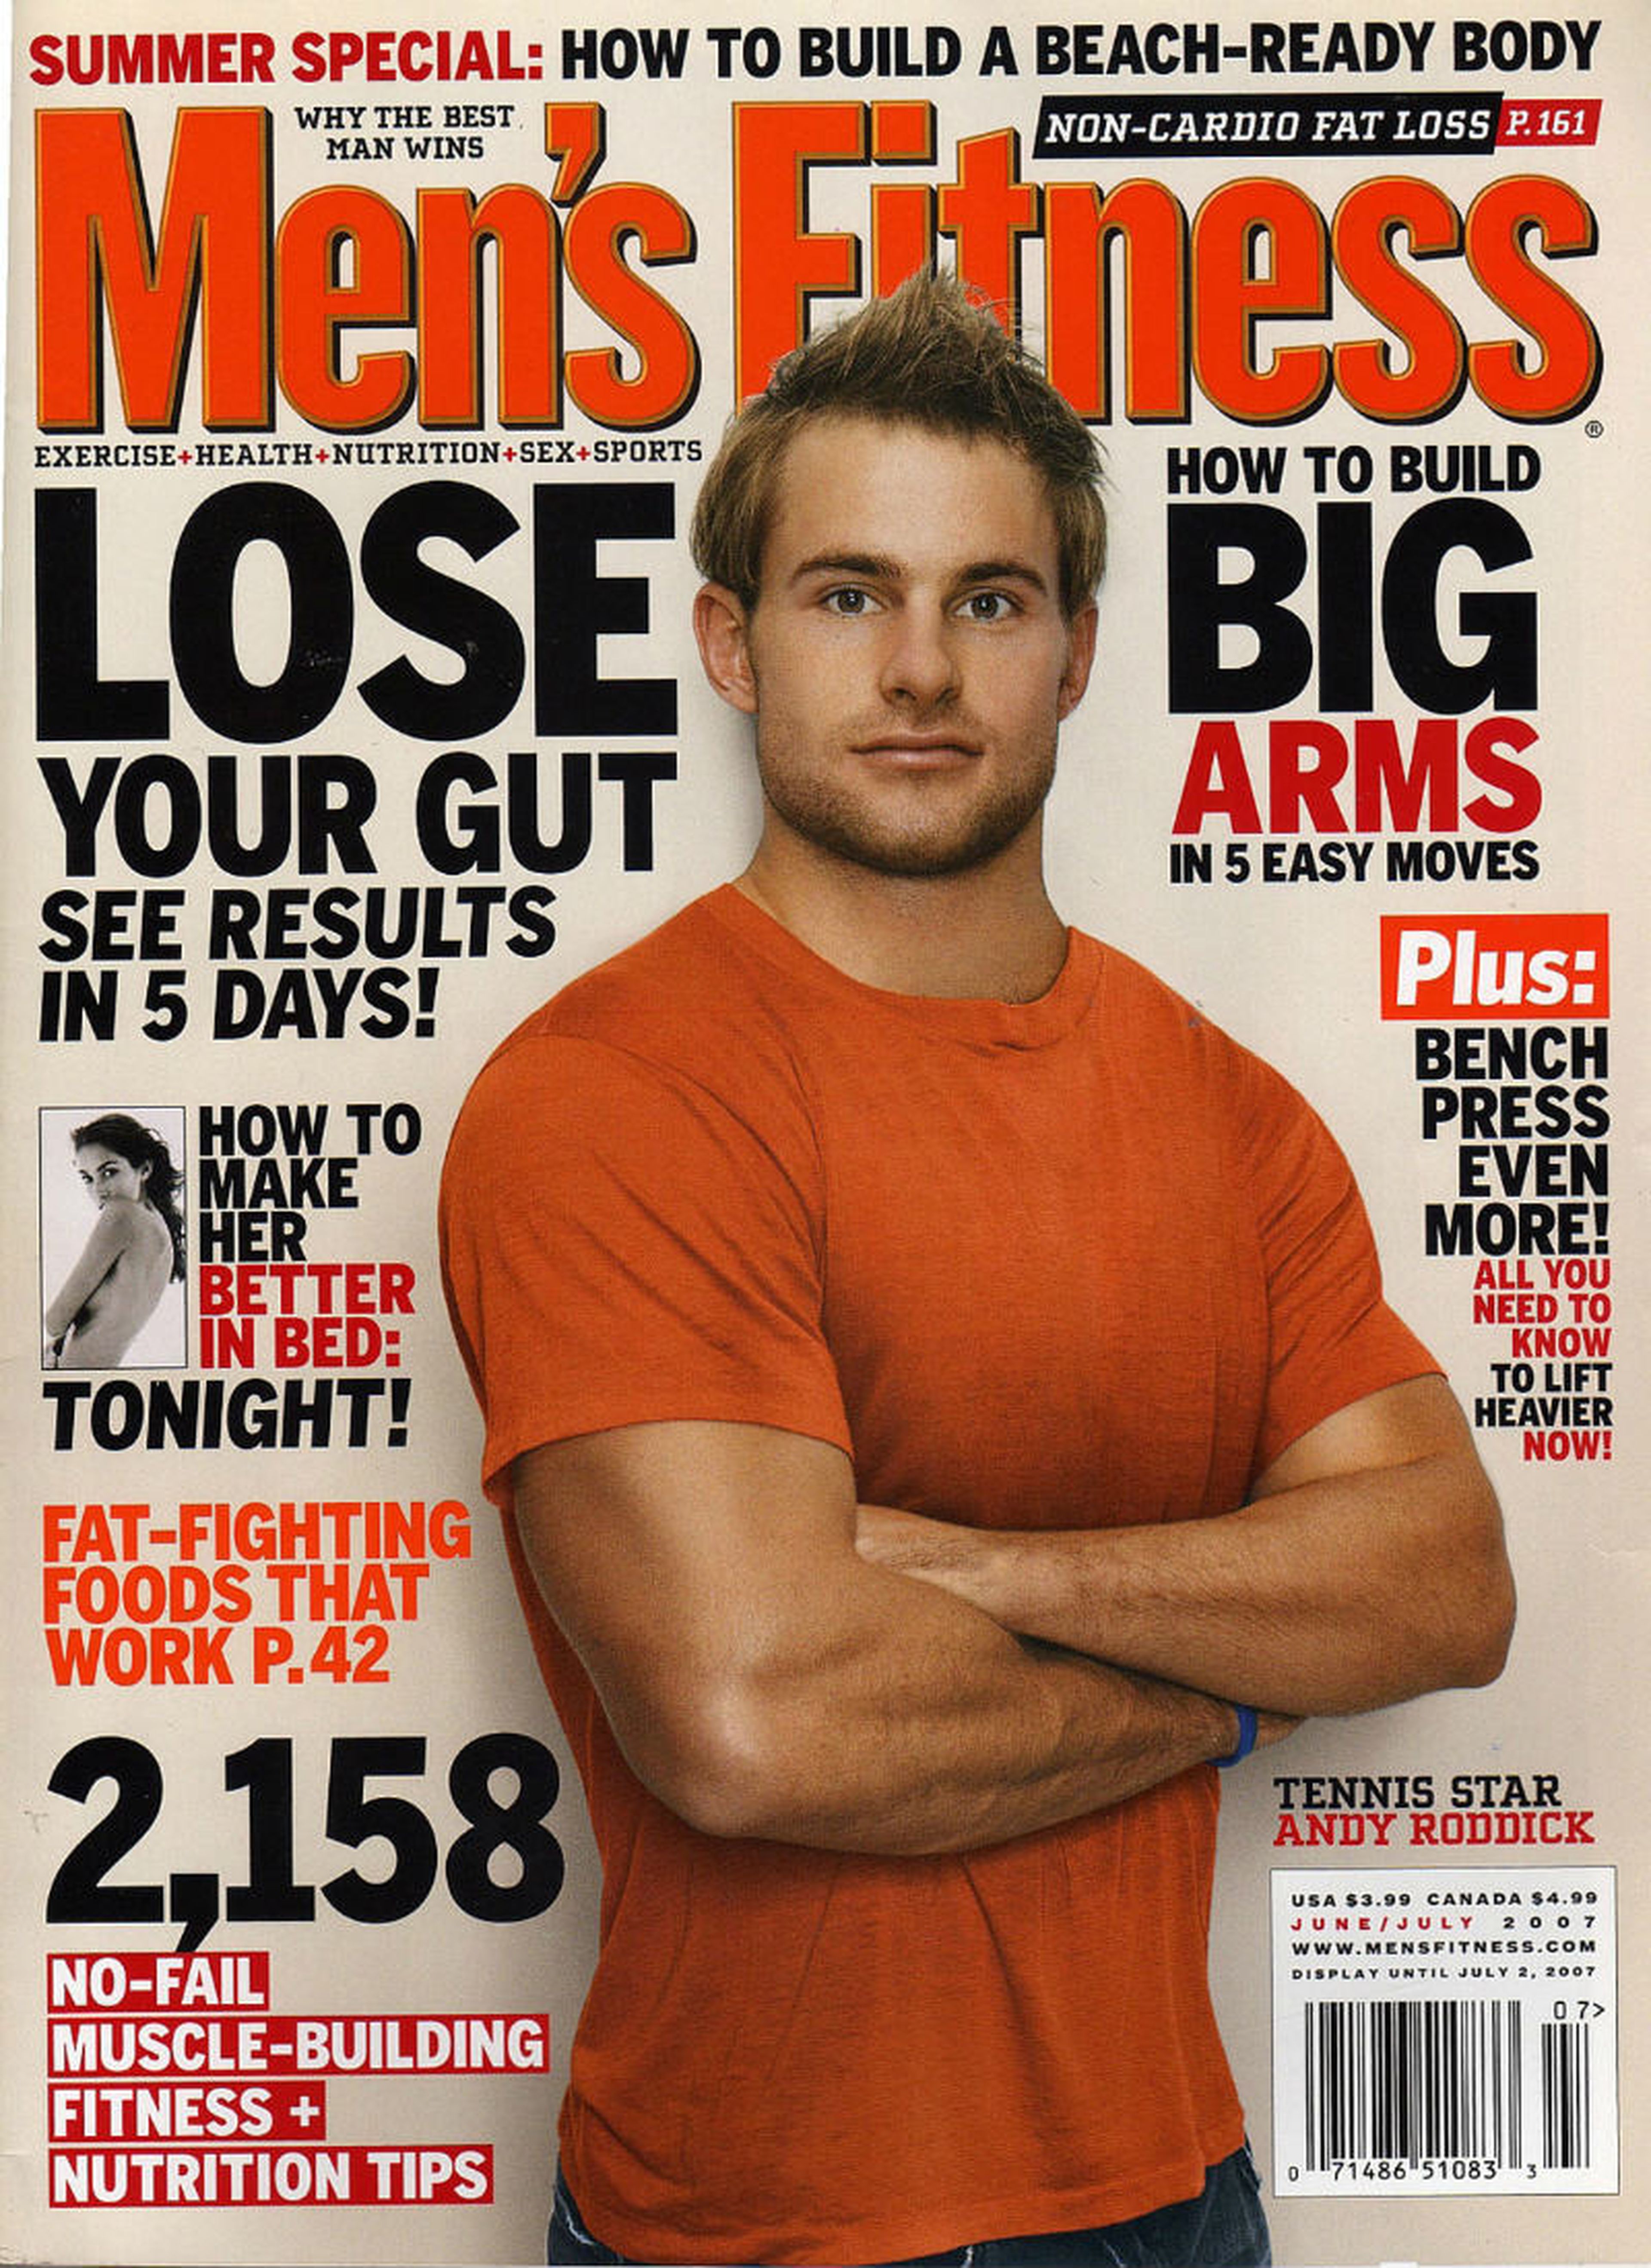 El tenista Andy Roddick apareció en la portada de Men's Fitness en junio/julio de 2007.